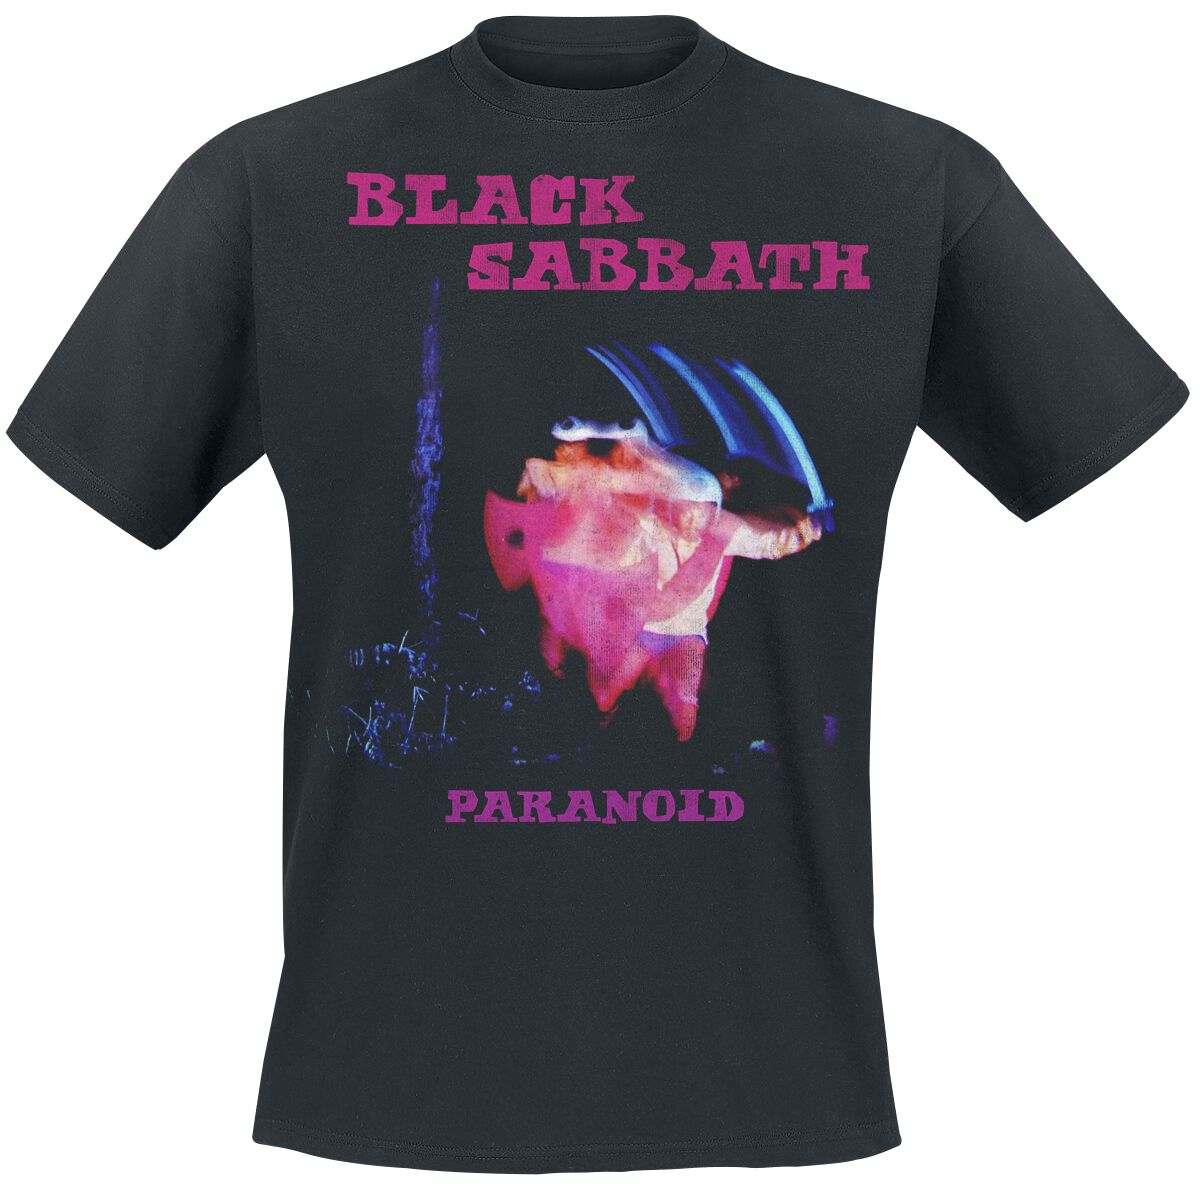 Black Sabbath T-Shirt - Paranoid Tracklist - S bis XXL - für Männer - Größe L - schwarz  - Lizenziertes Merchandise!